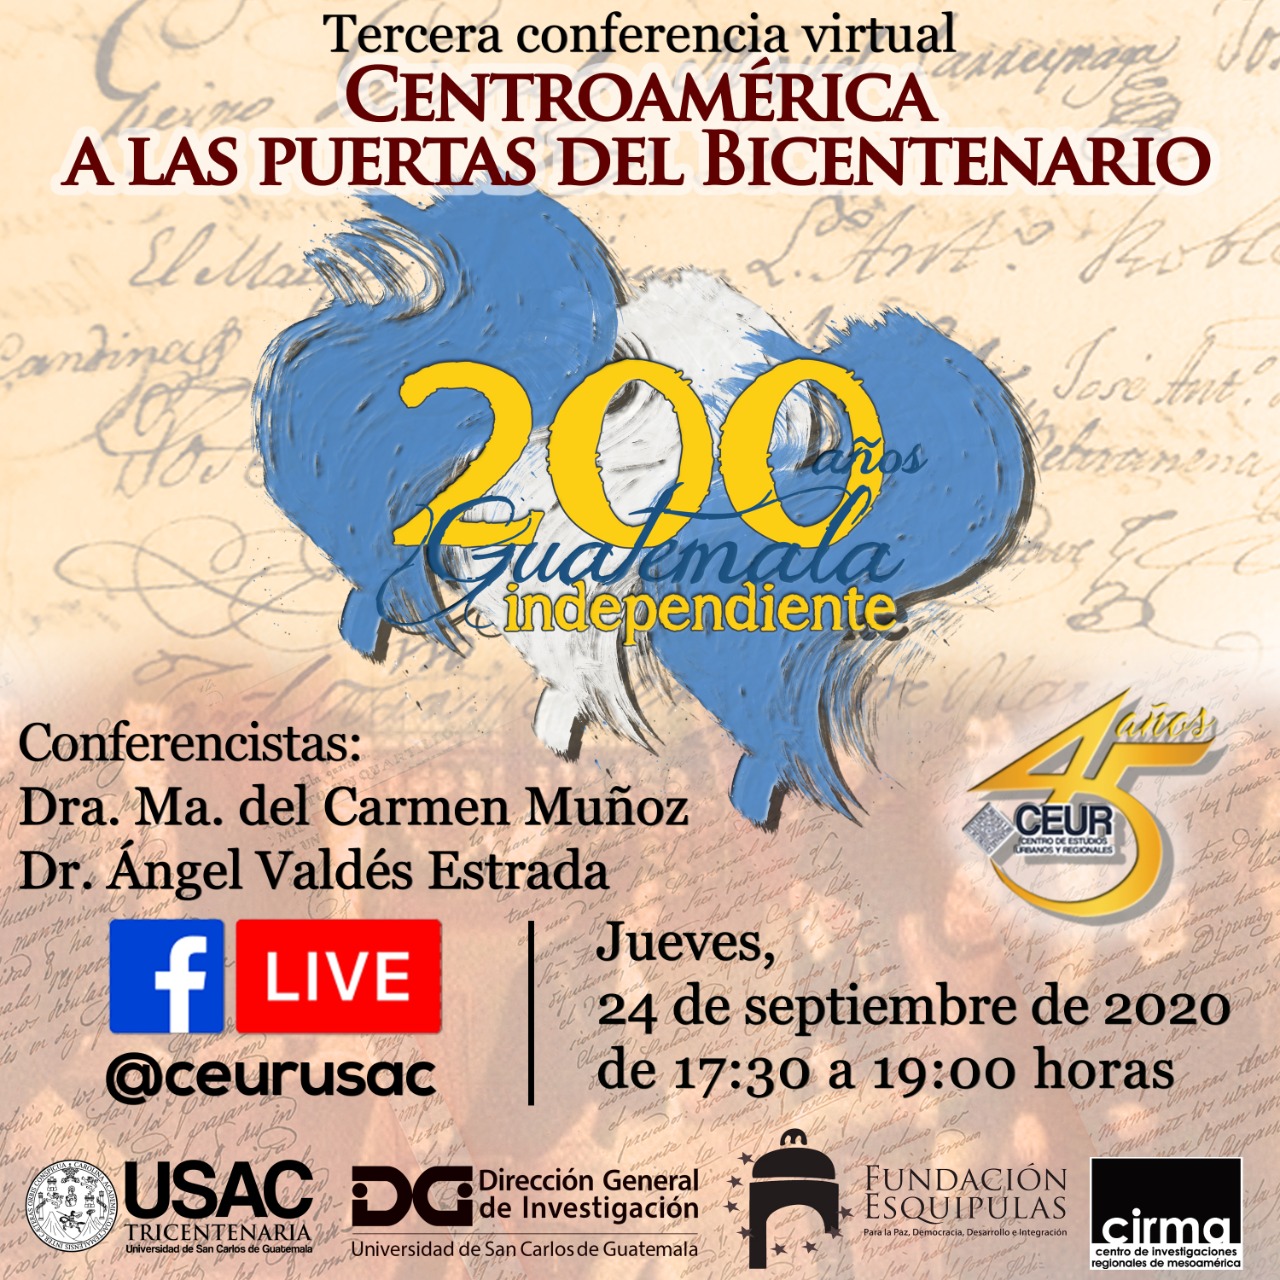 CUARTA CONFERENCIA VIRTUAL: Centroamérica a las puertas del bicentenario #CEUR